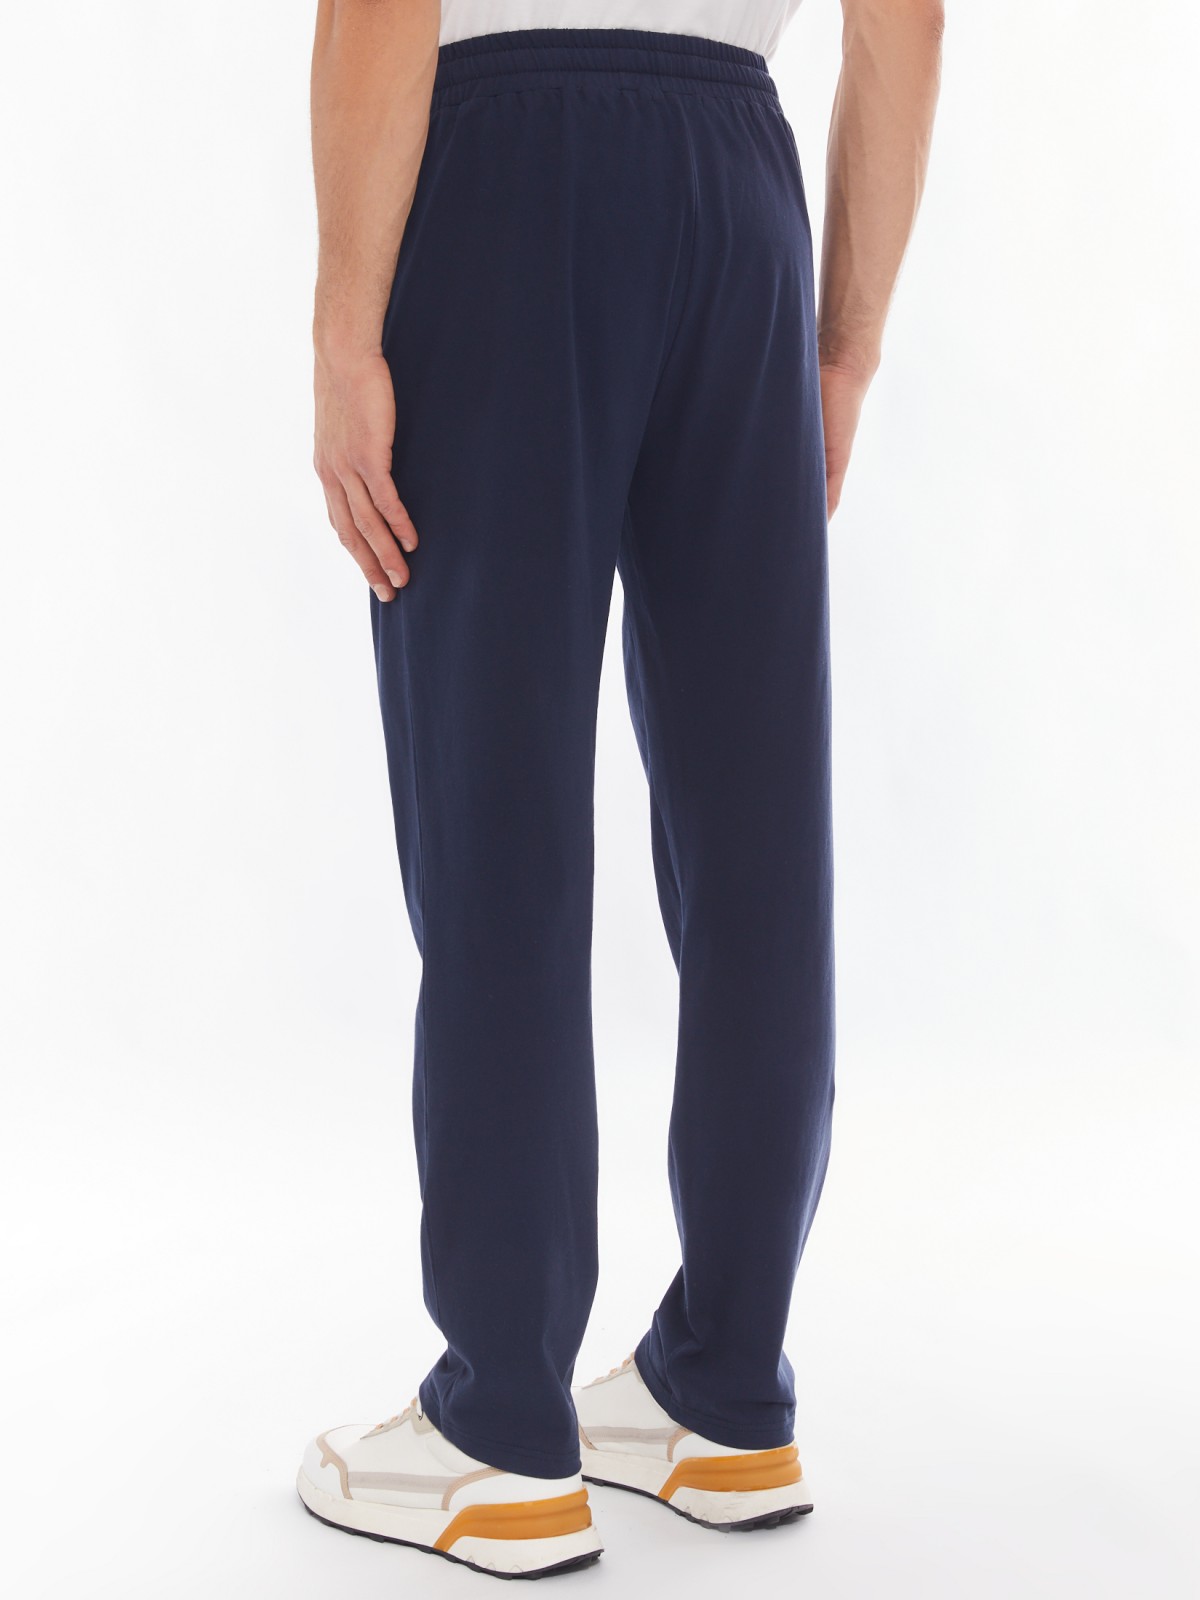 Трикотажные брюки из хлопка в спортивном стиле zolla 014137675012, цвет синий, размер S - фото 6